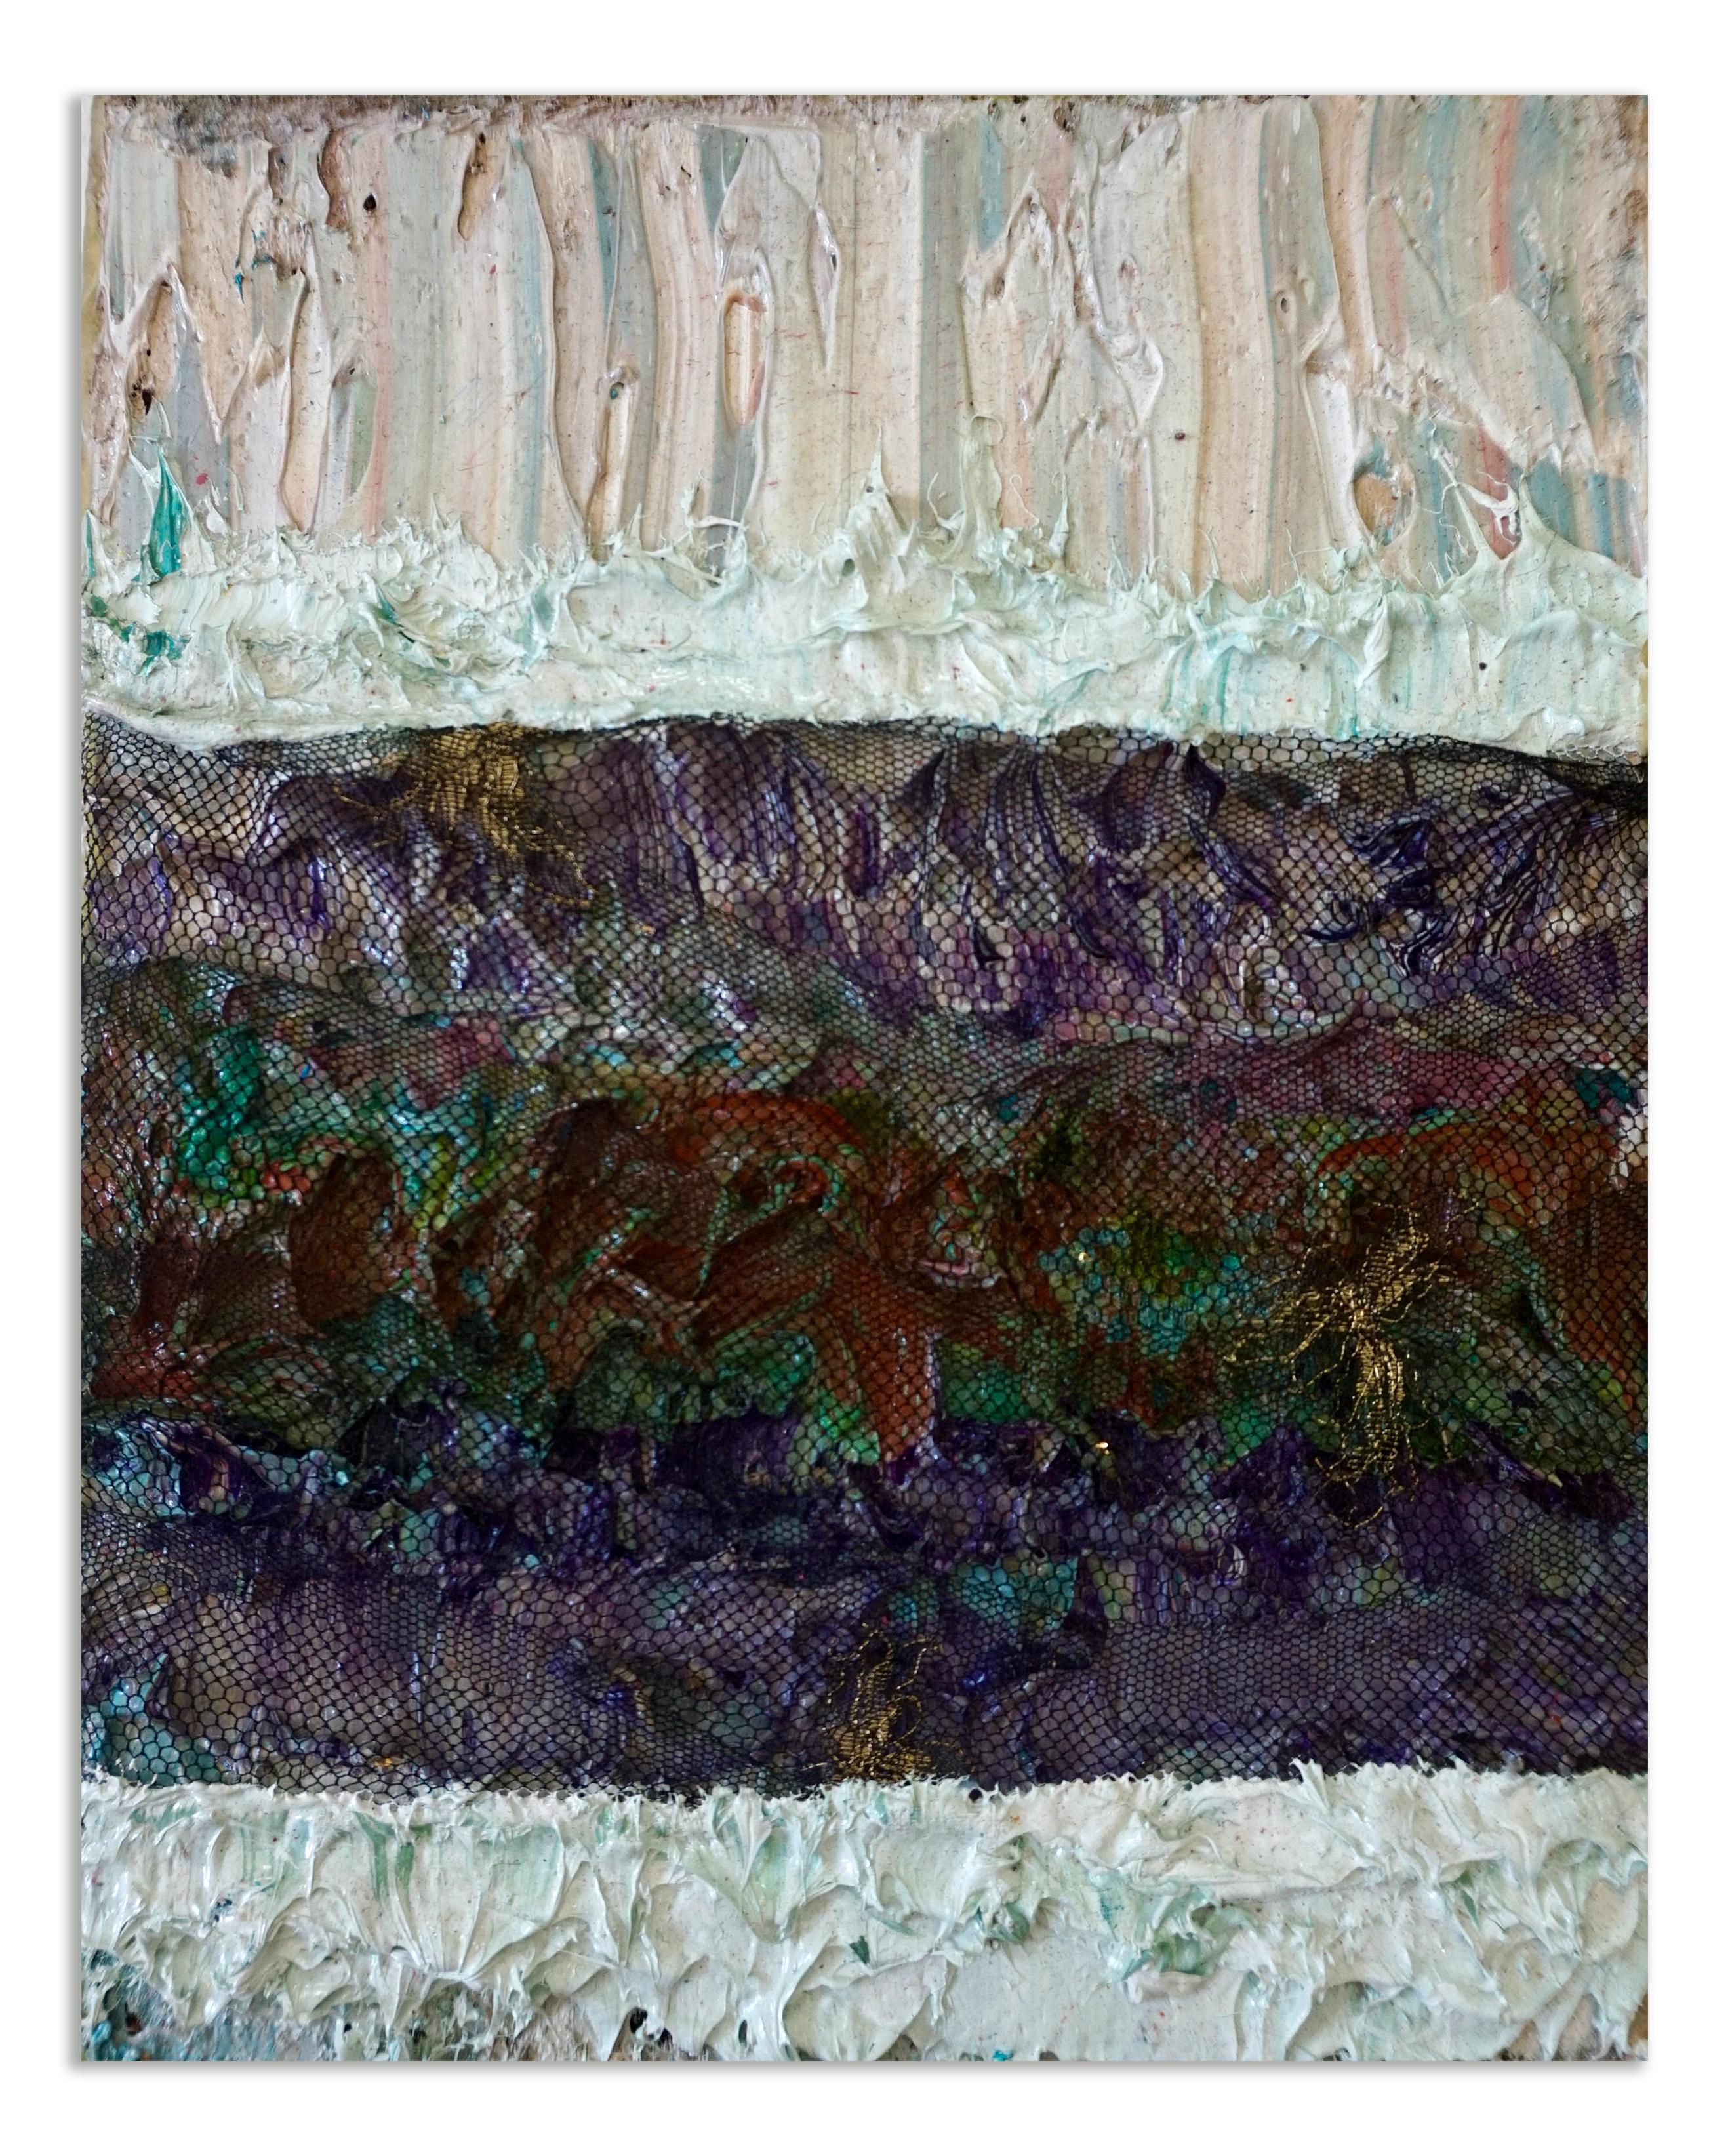 Taktiles Gedächtnis #128. Abstraktes Gemälde in Mischtechnik, Acryl und Spitze auf Leinwand – Painting von Natasha Zupan